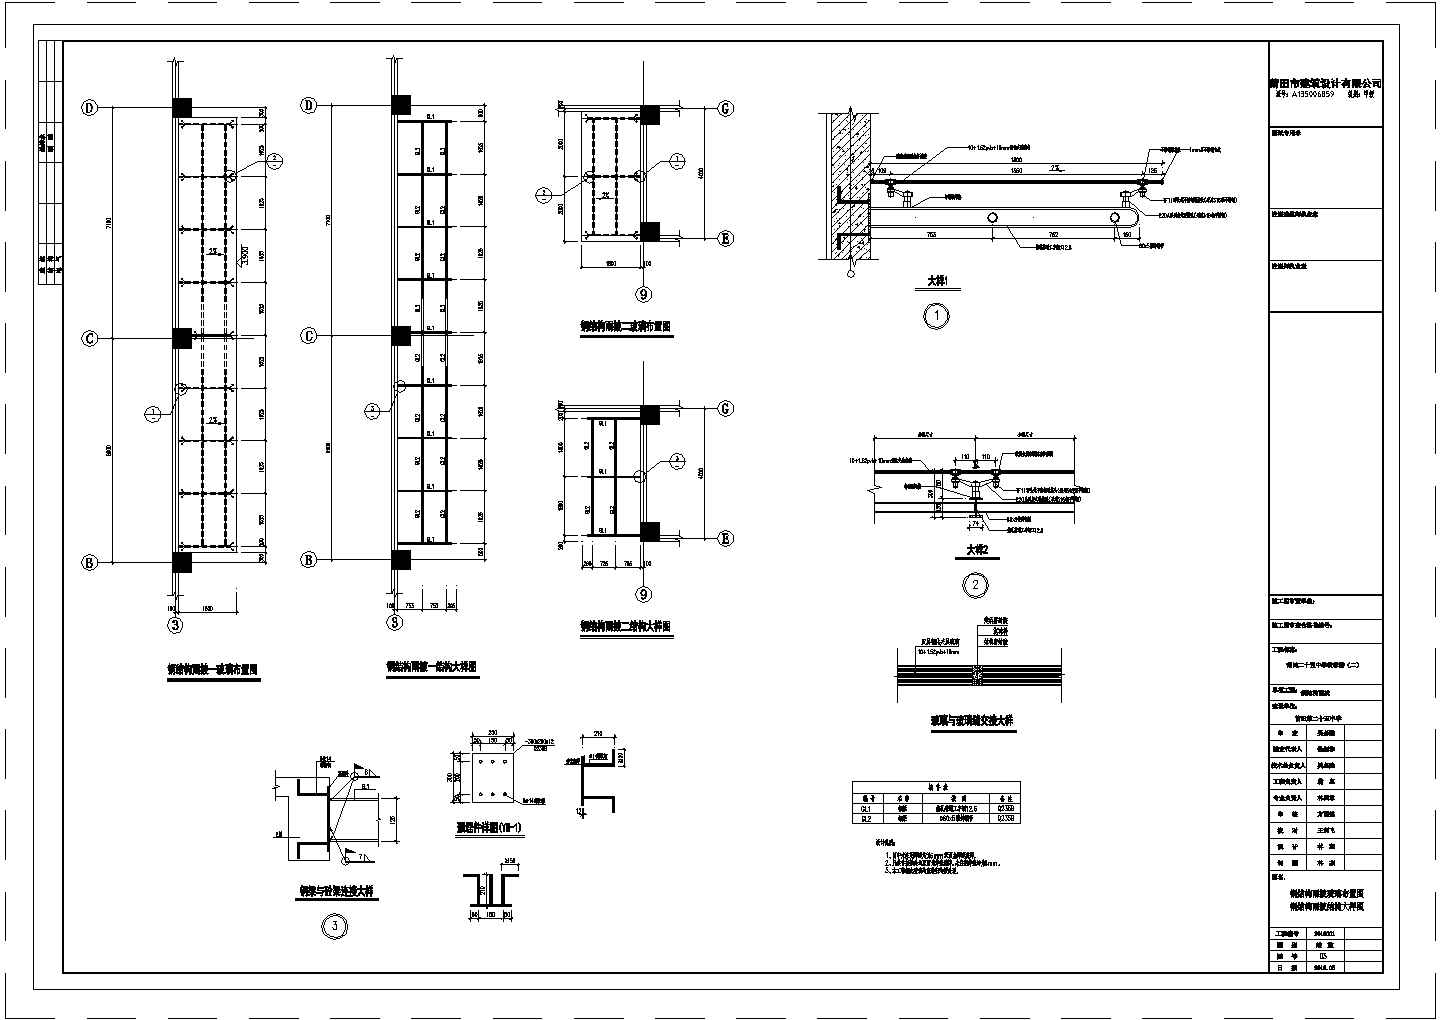 某第二十五中学教学楼建设工程钢结构雨披CAD平面设计图